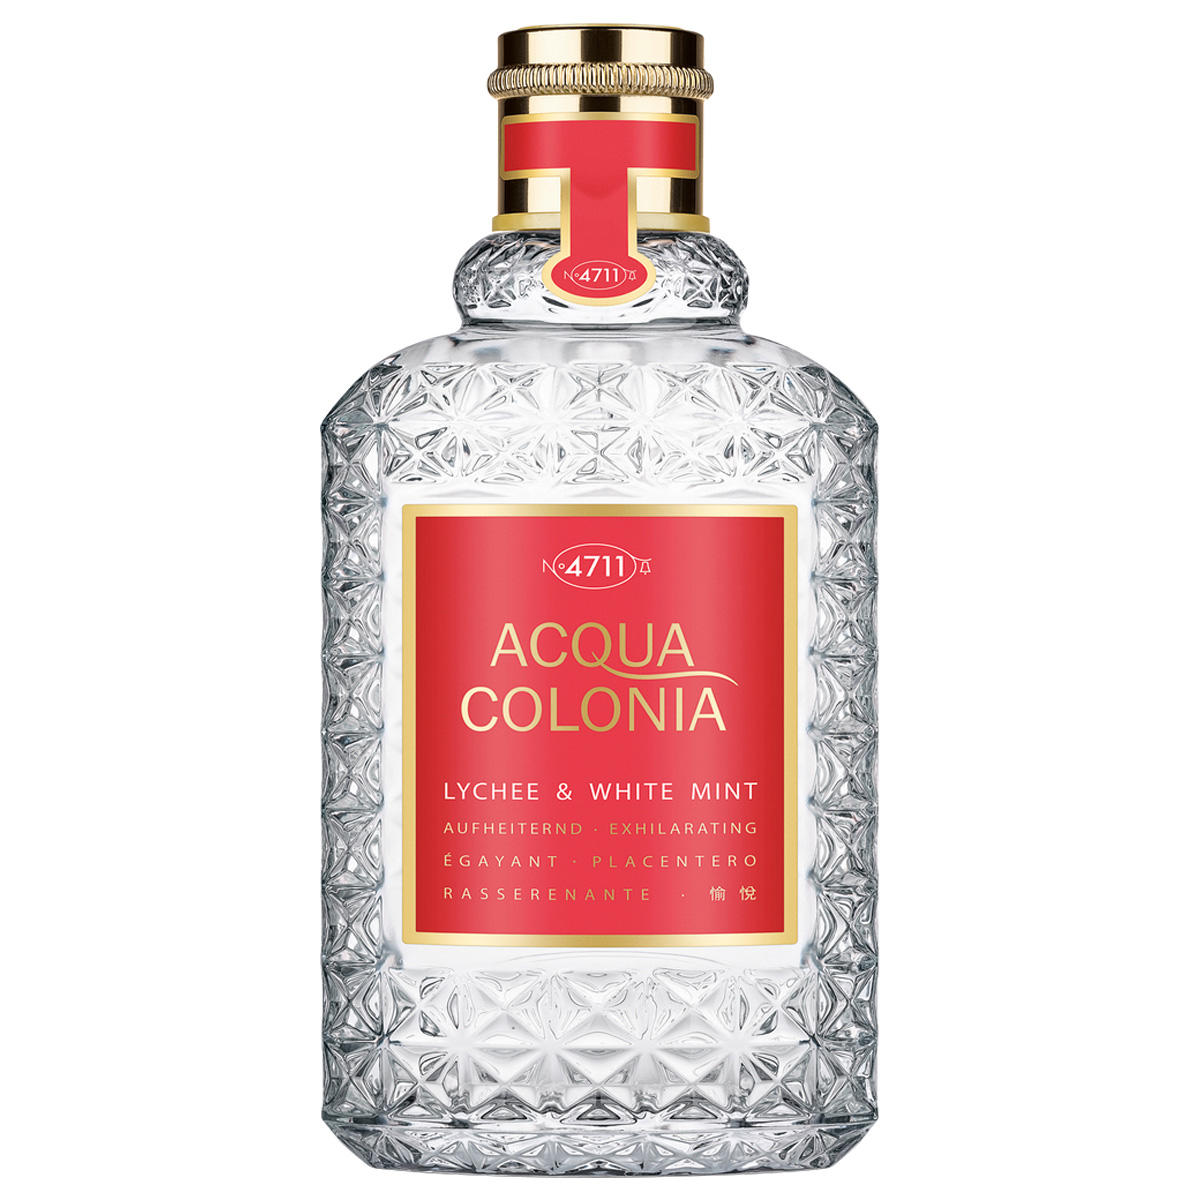 4711 Acqua Colonia Lychee & White Mint Eau de Cologne 100 ml - 1